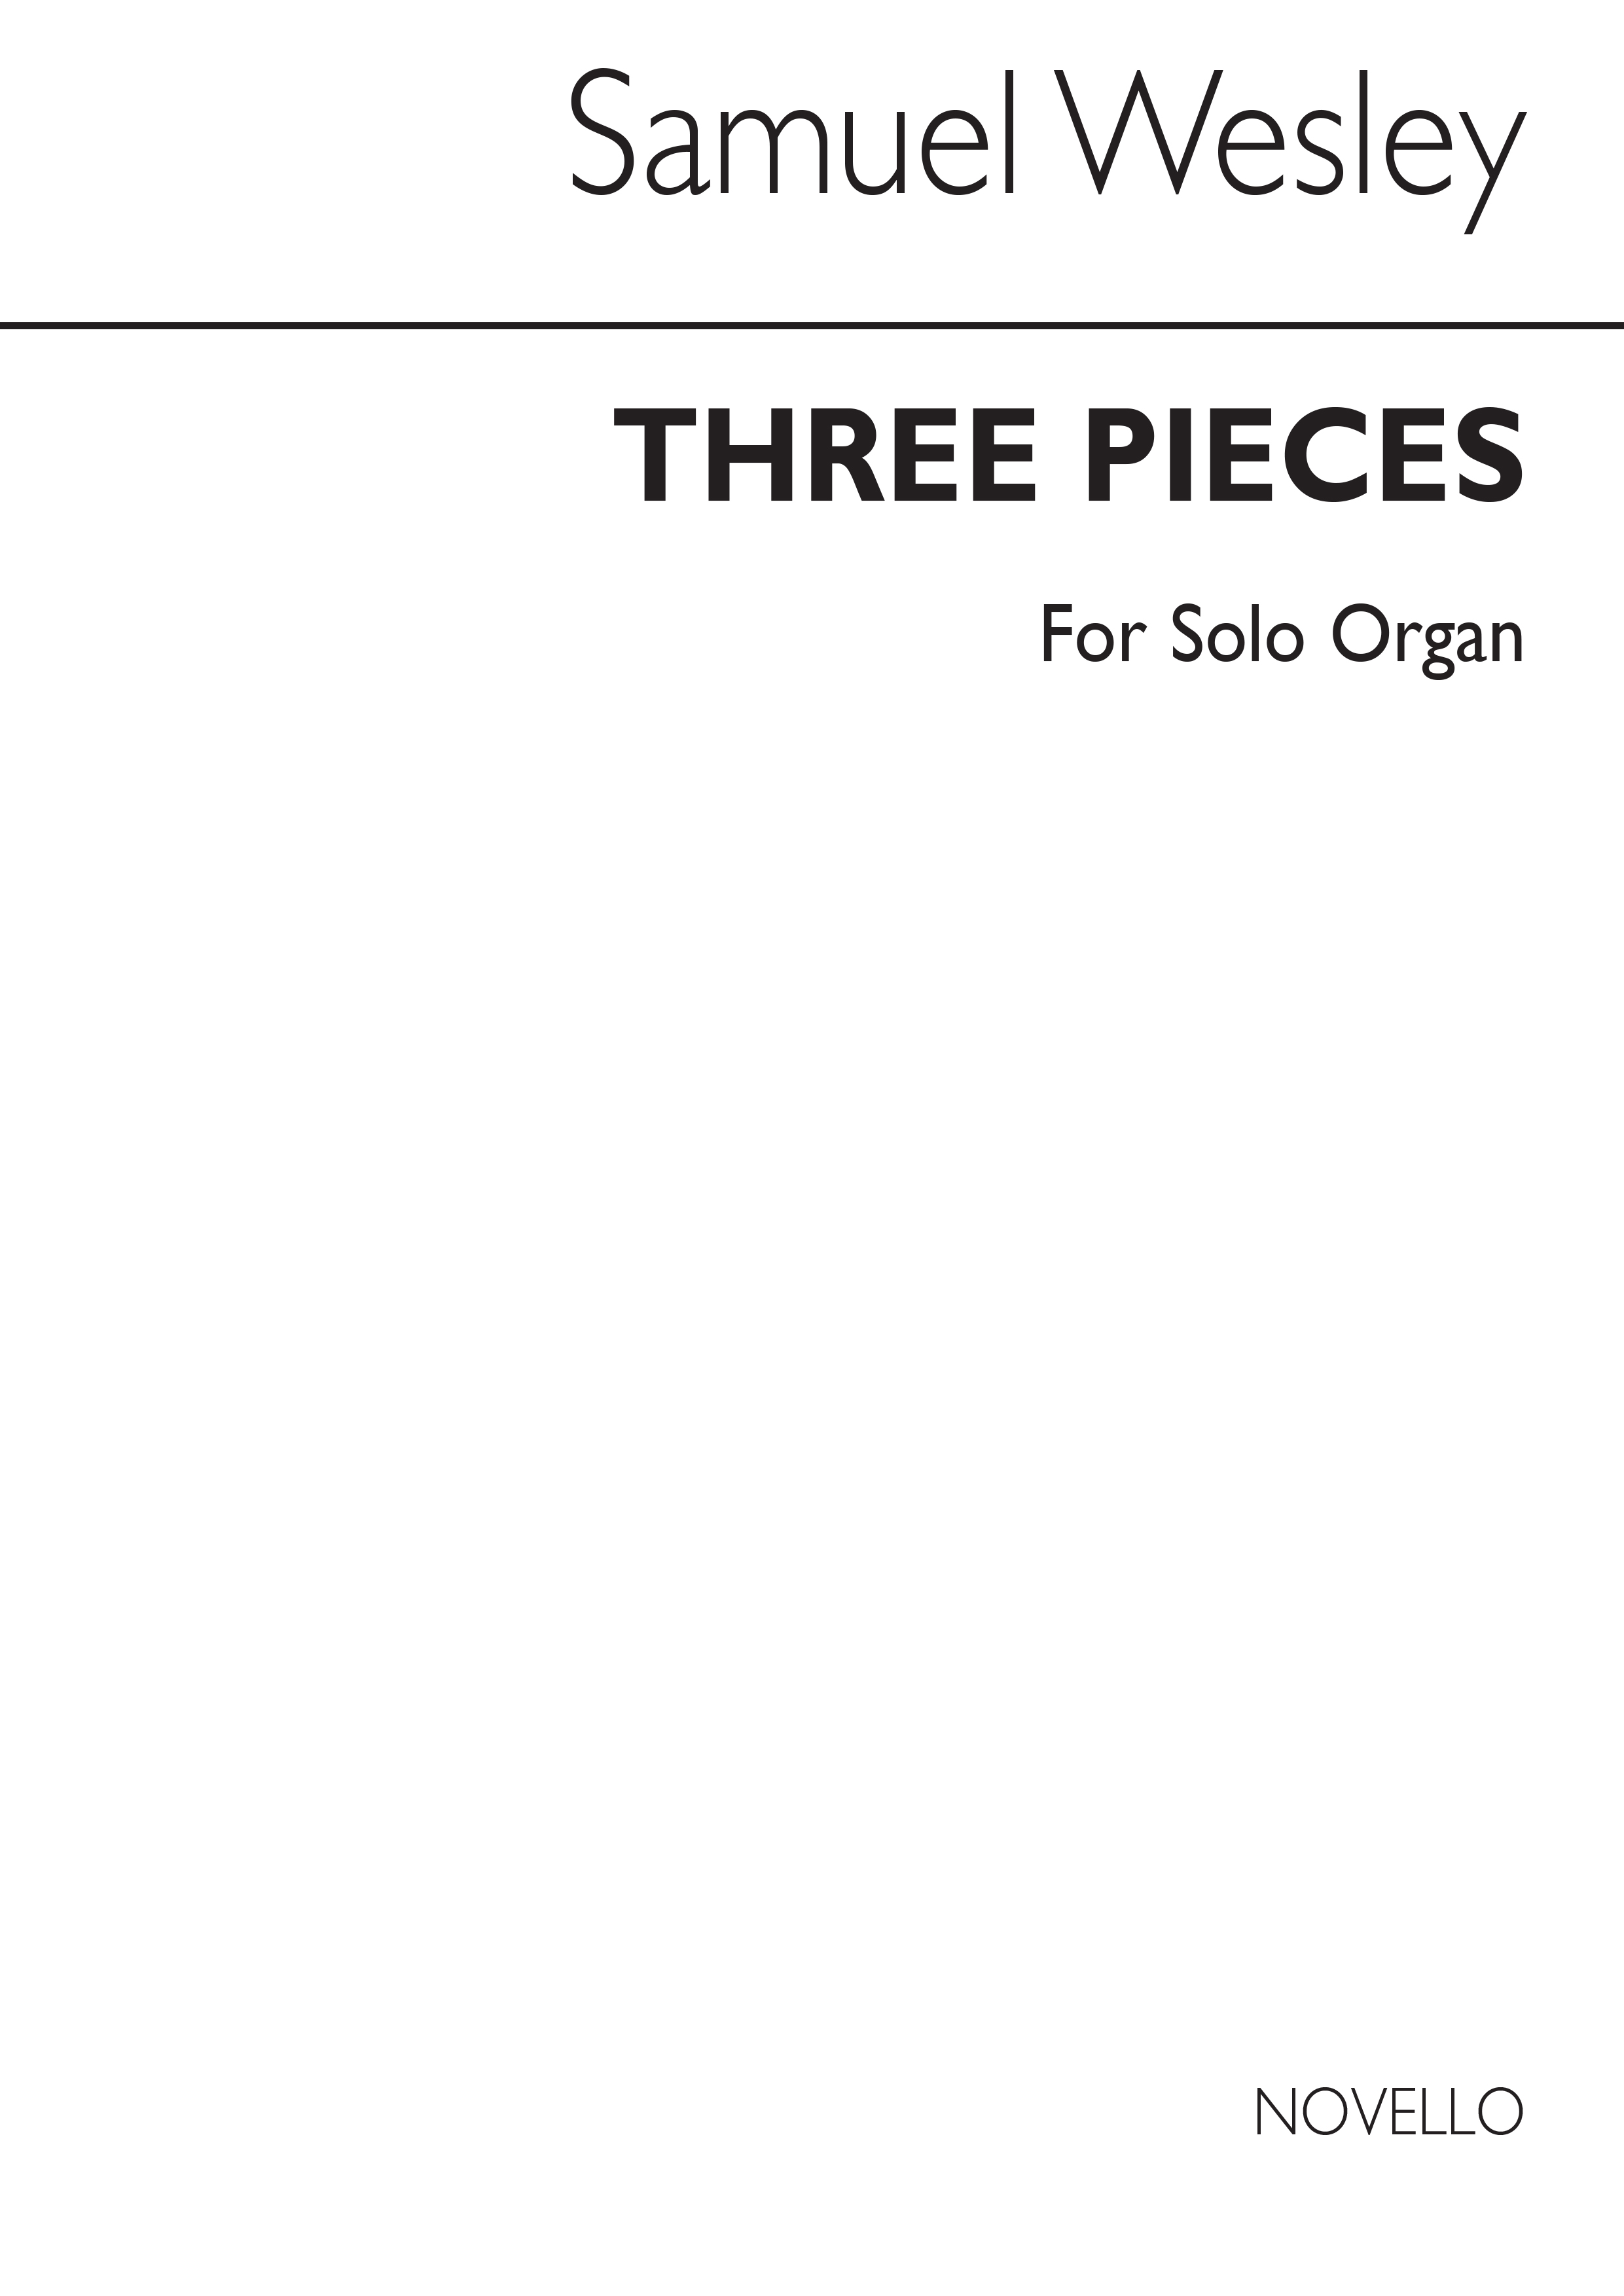 Samuel Wesley: Three Pieces For Organ